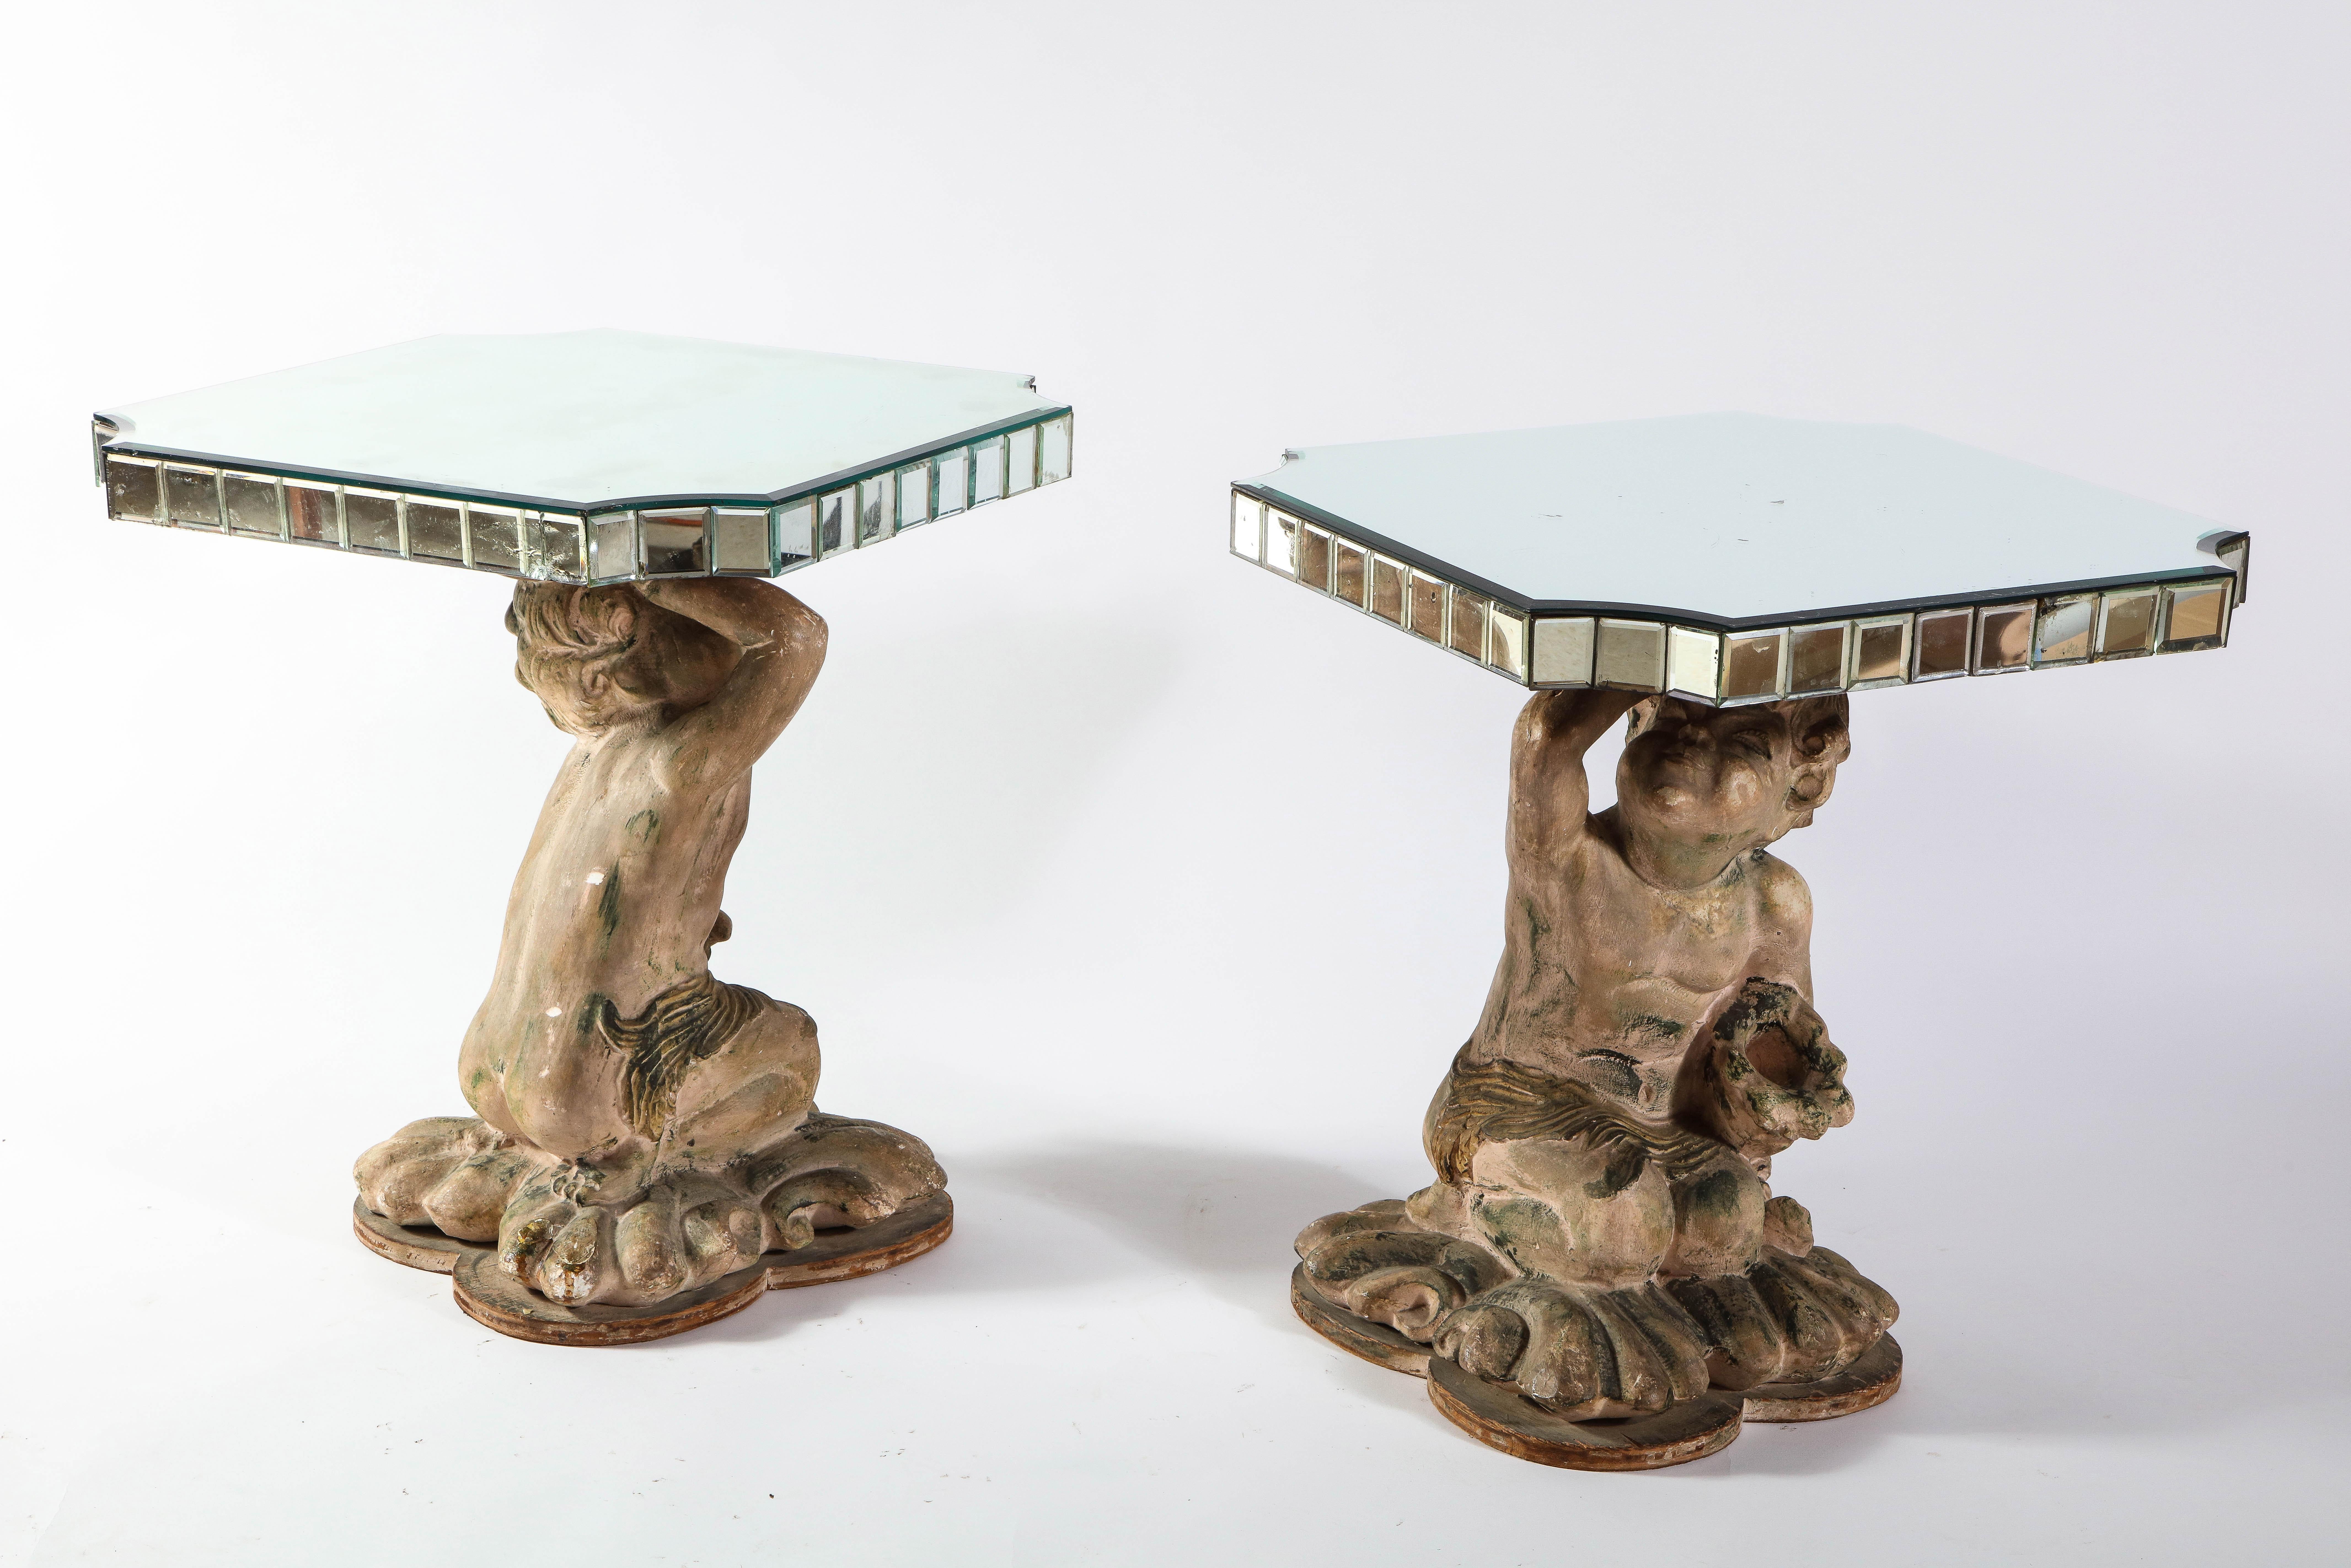 Une paire inhabituelle et très décorative de tables d'appoint en terre cuite du milieu du siècle dernier, avec des miroirs et des figures. Chaque figure ressemblant à un Cupidon est faite de terre cuite sculptée à la main, qui est finement finie à